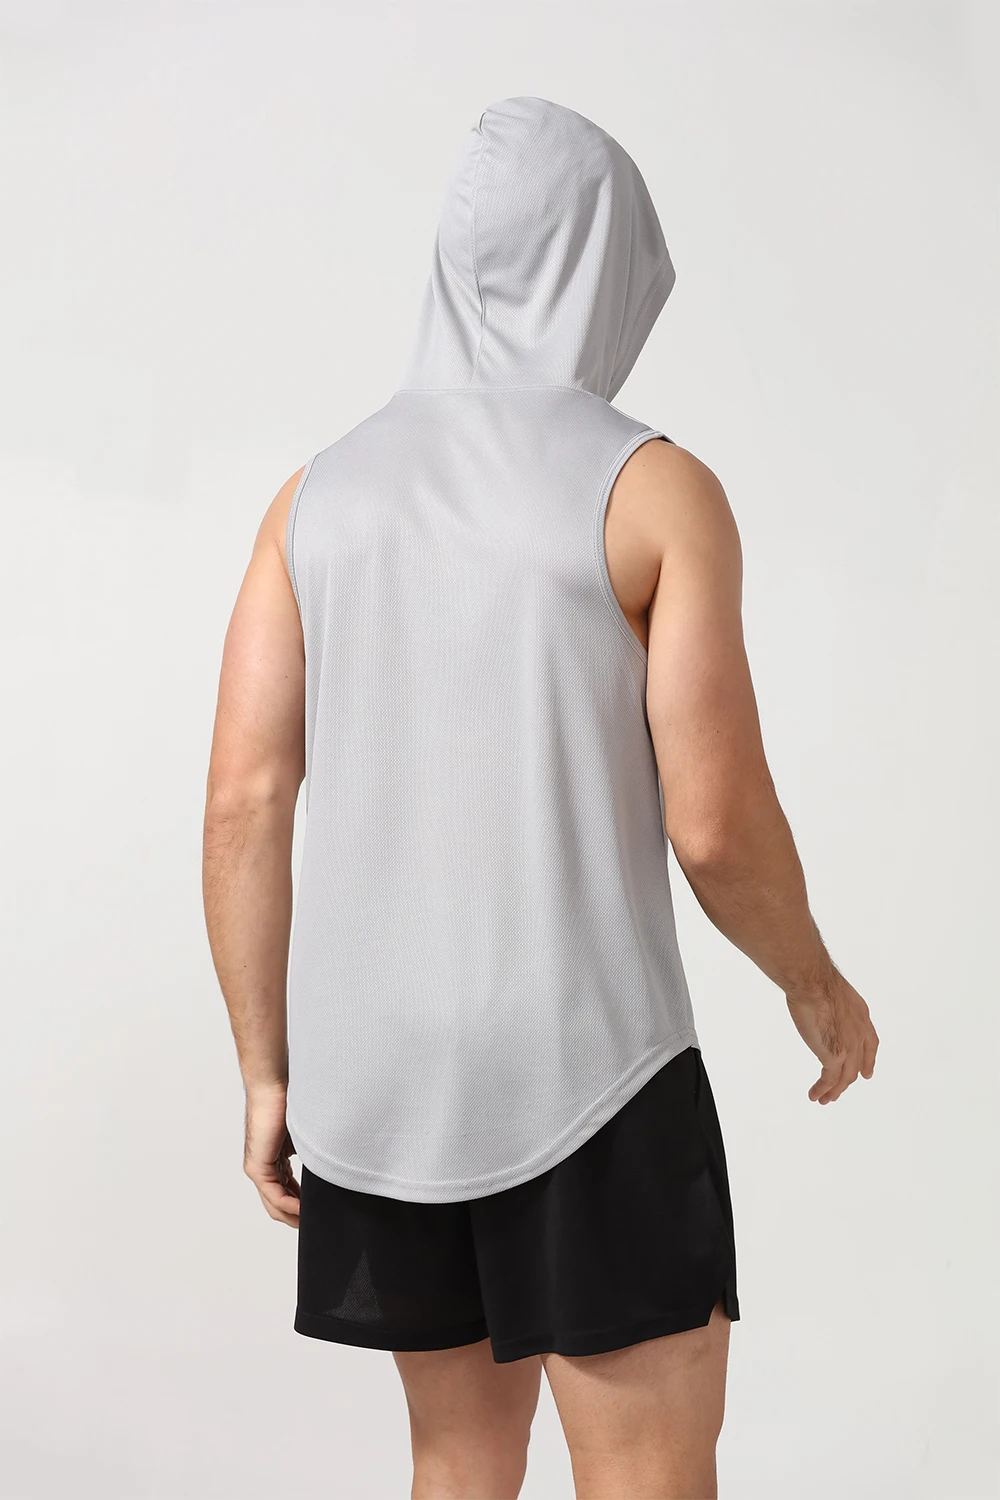 Men's Streetwear Workout Hooded Tank Tops Sports Body Building Stringer ...